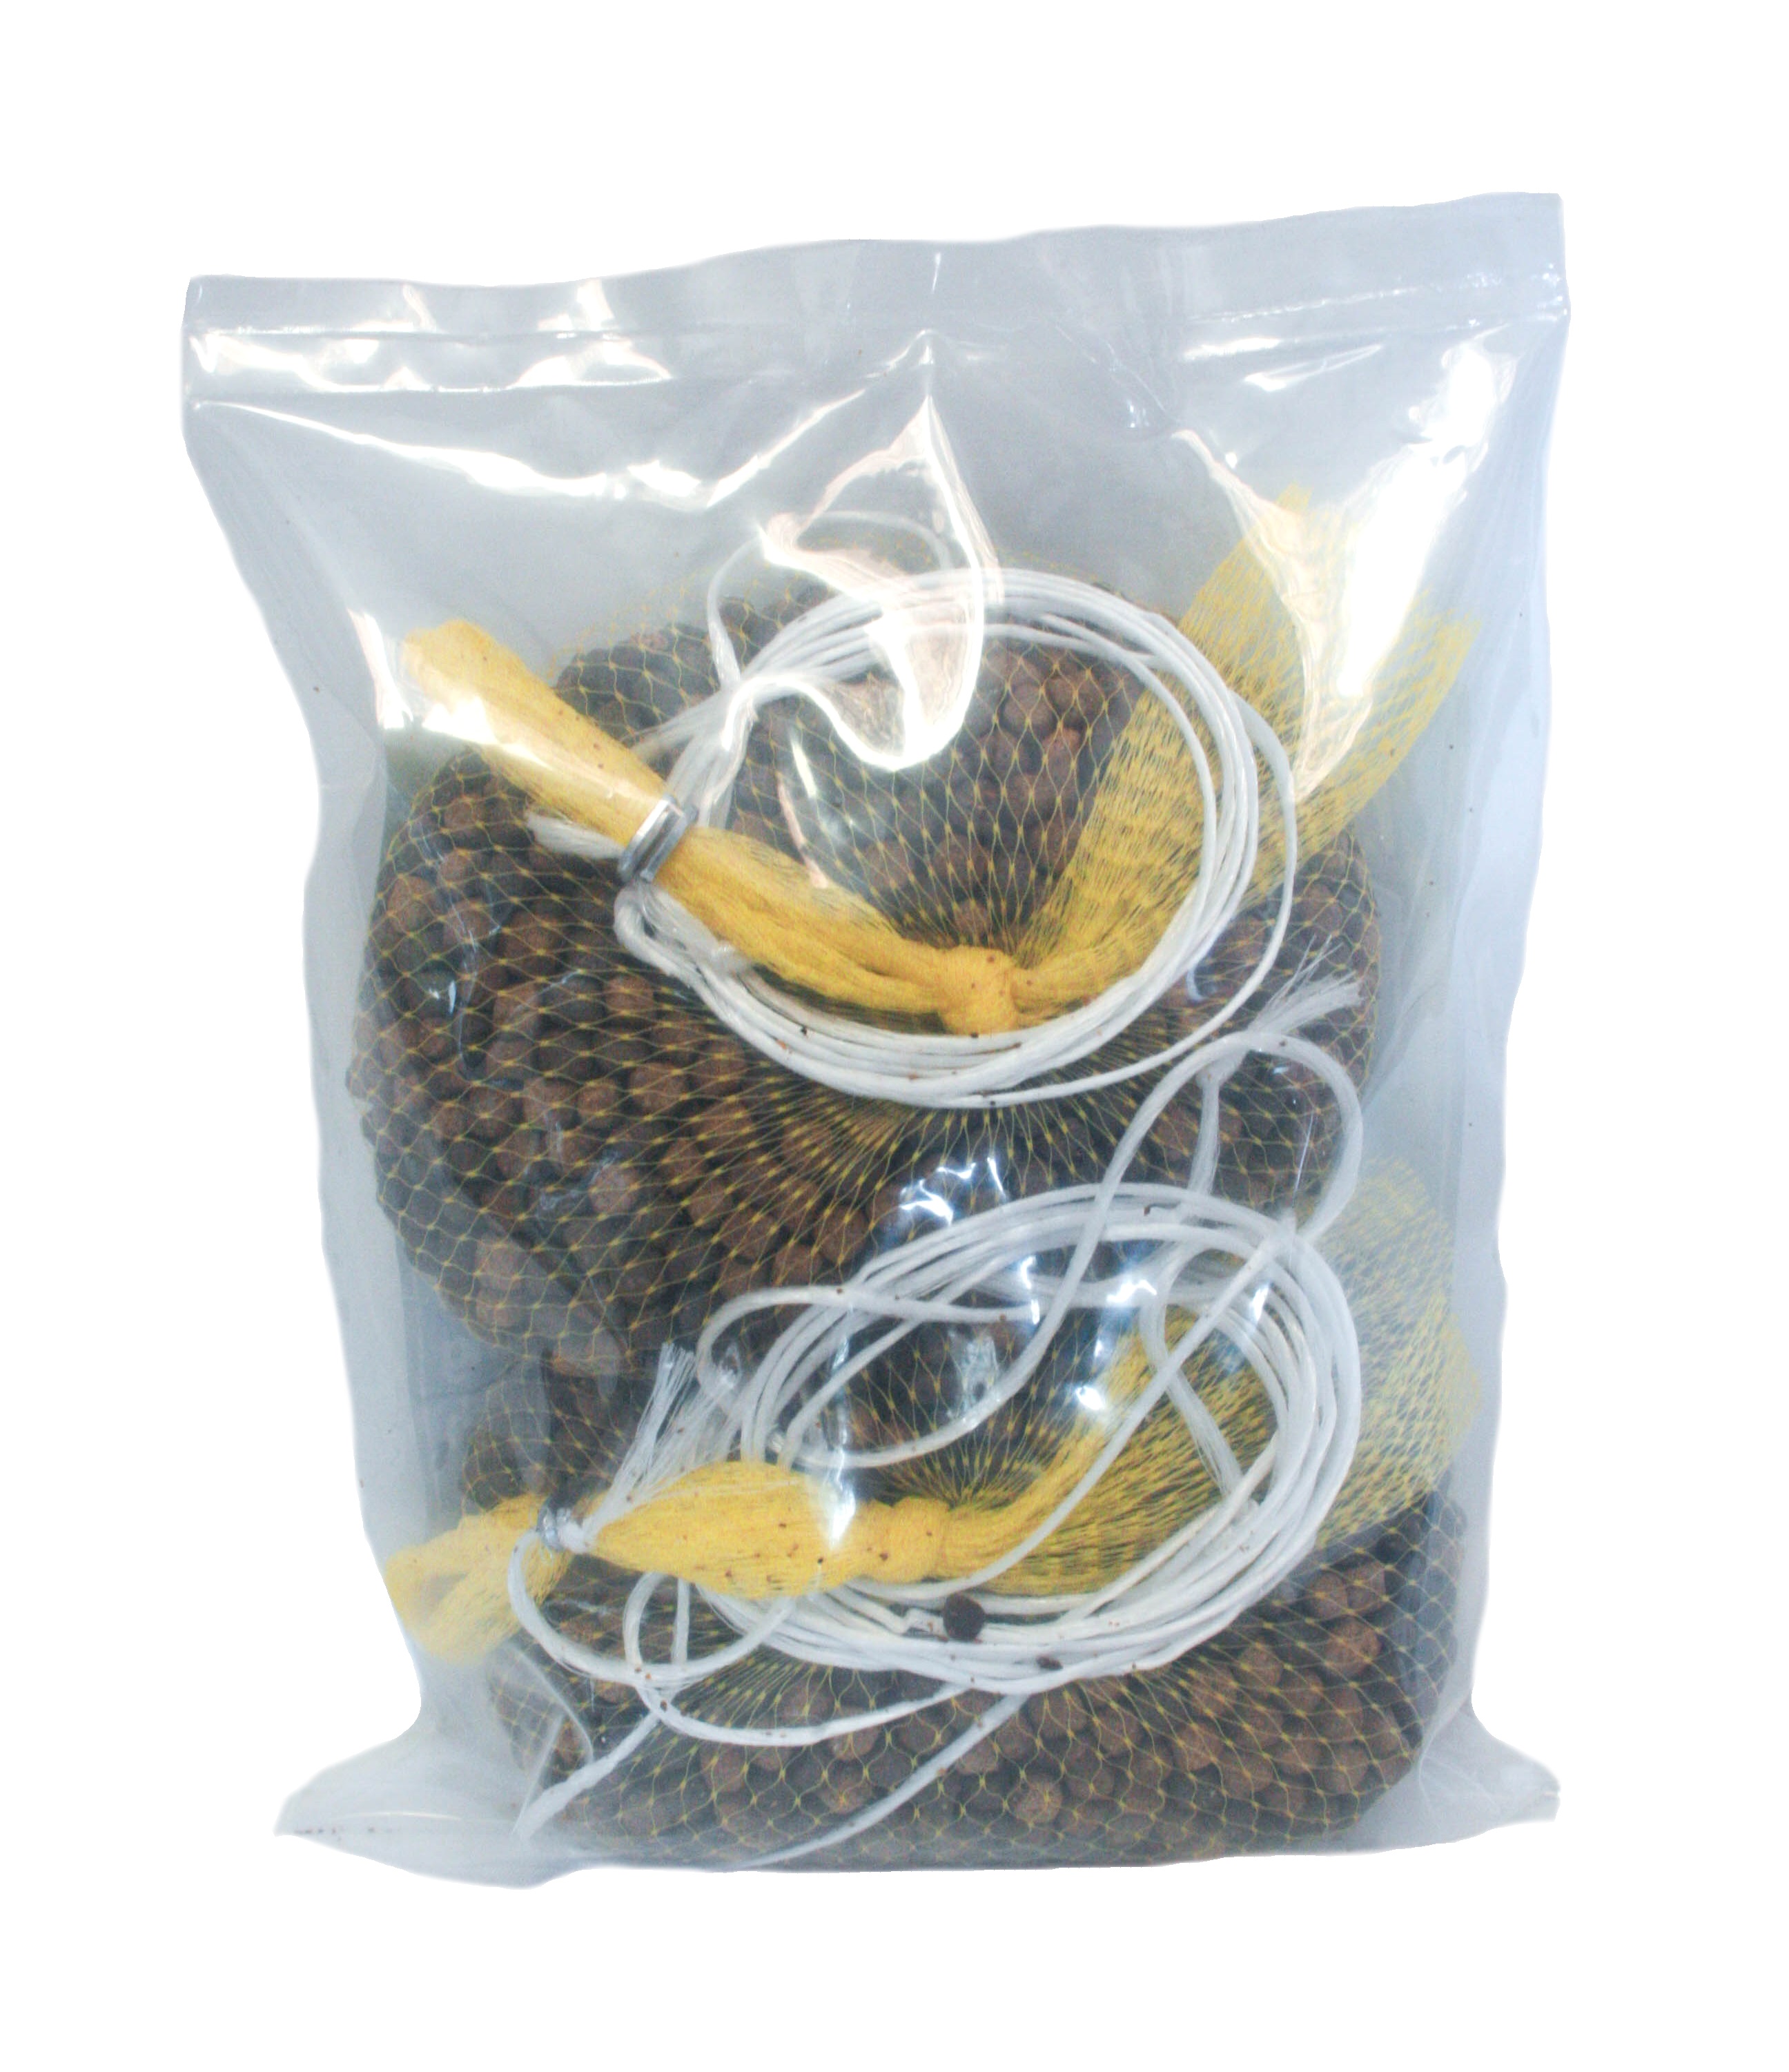 Aquatic Nutrition - Mojo Fish Chum - Saltwater 2/1lb bags